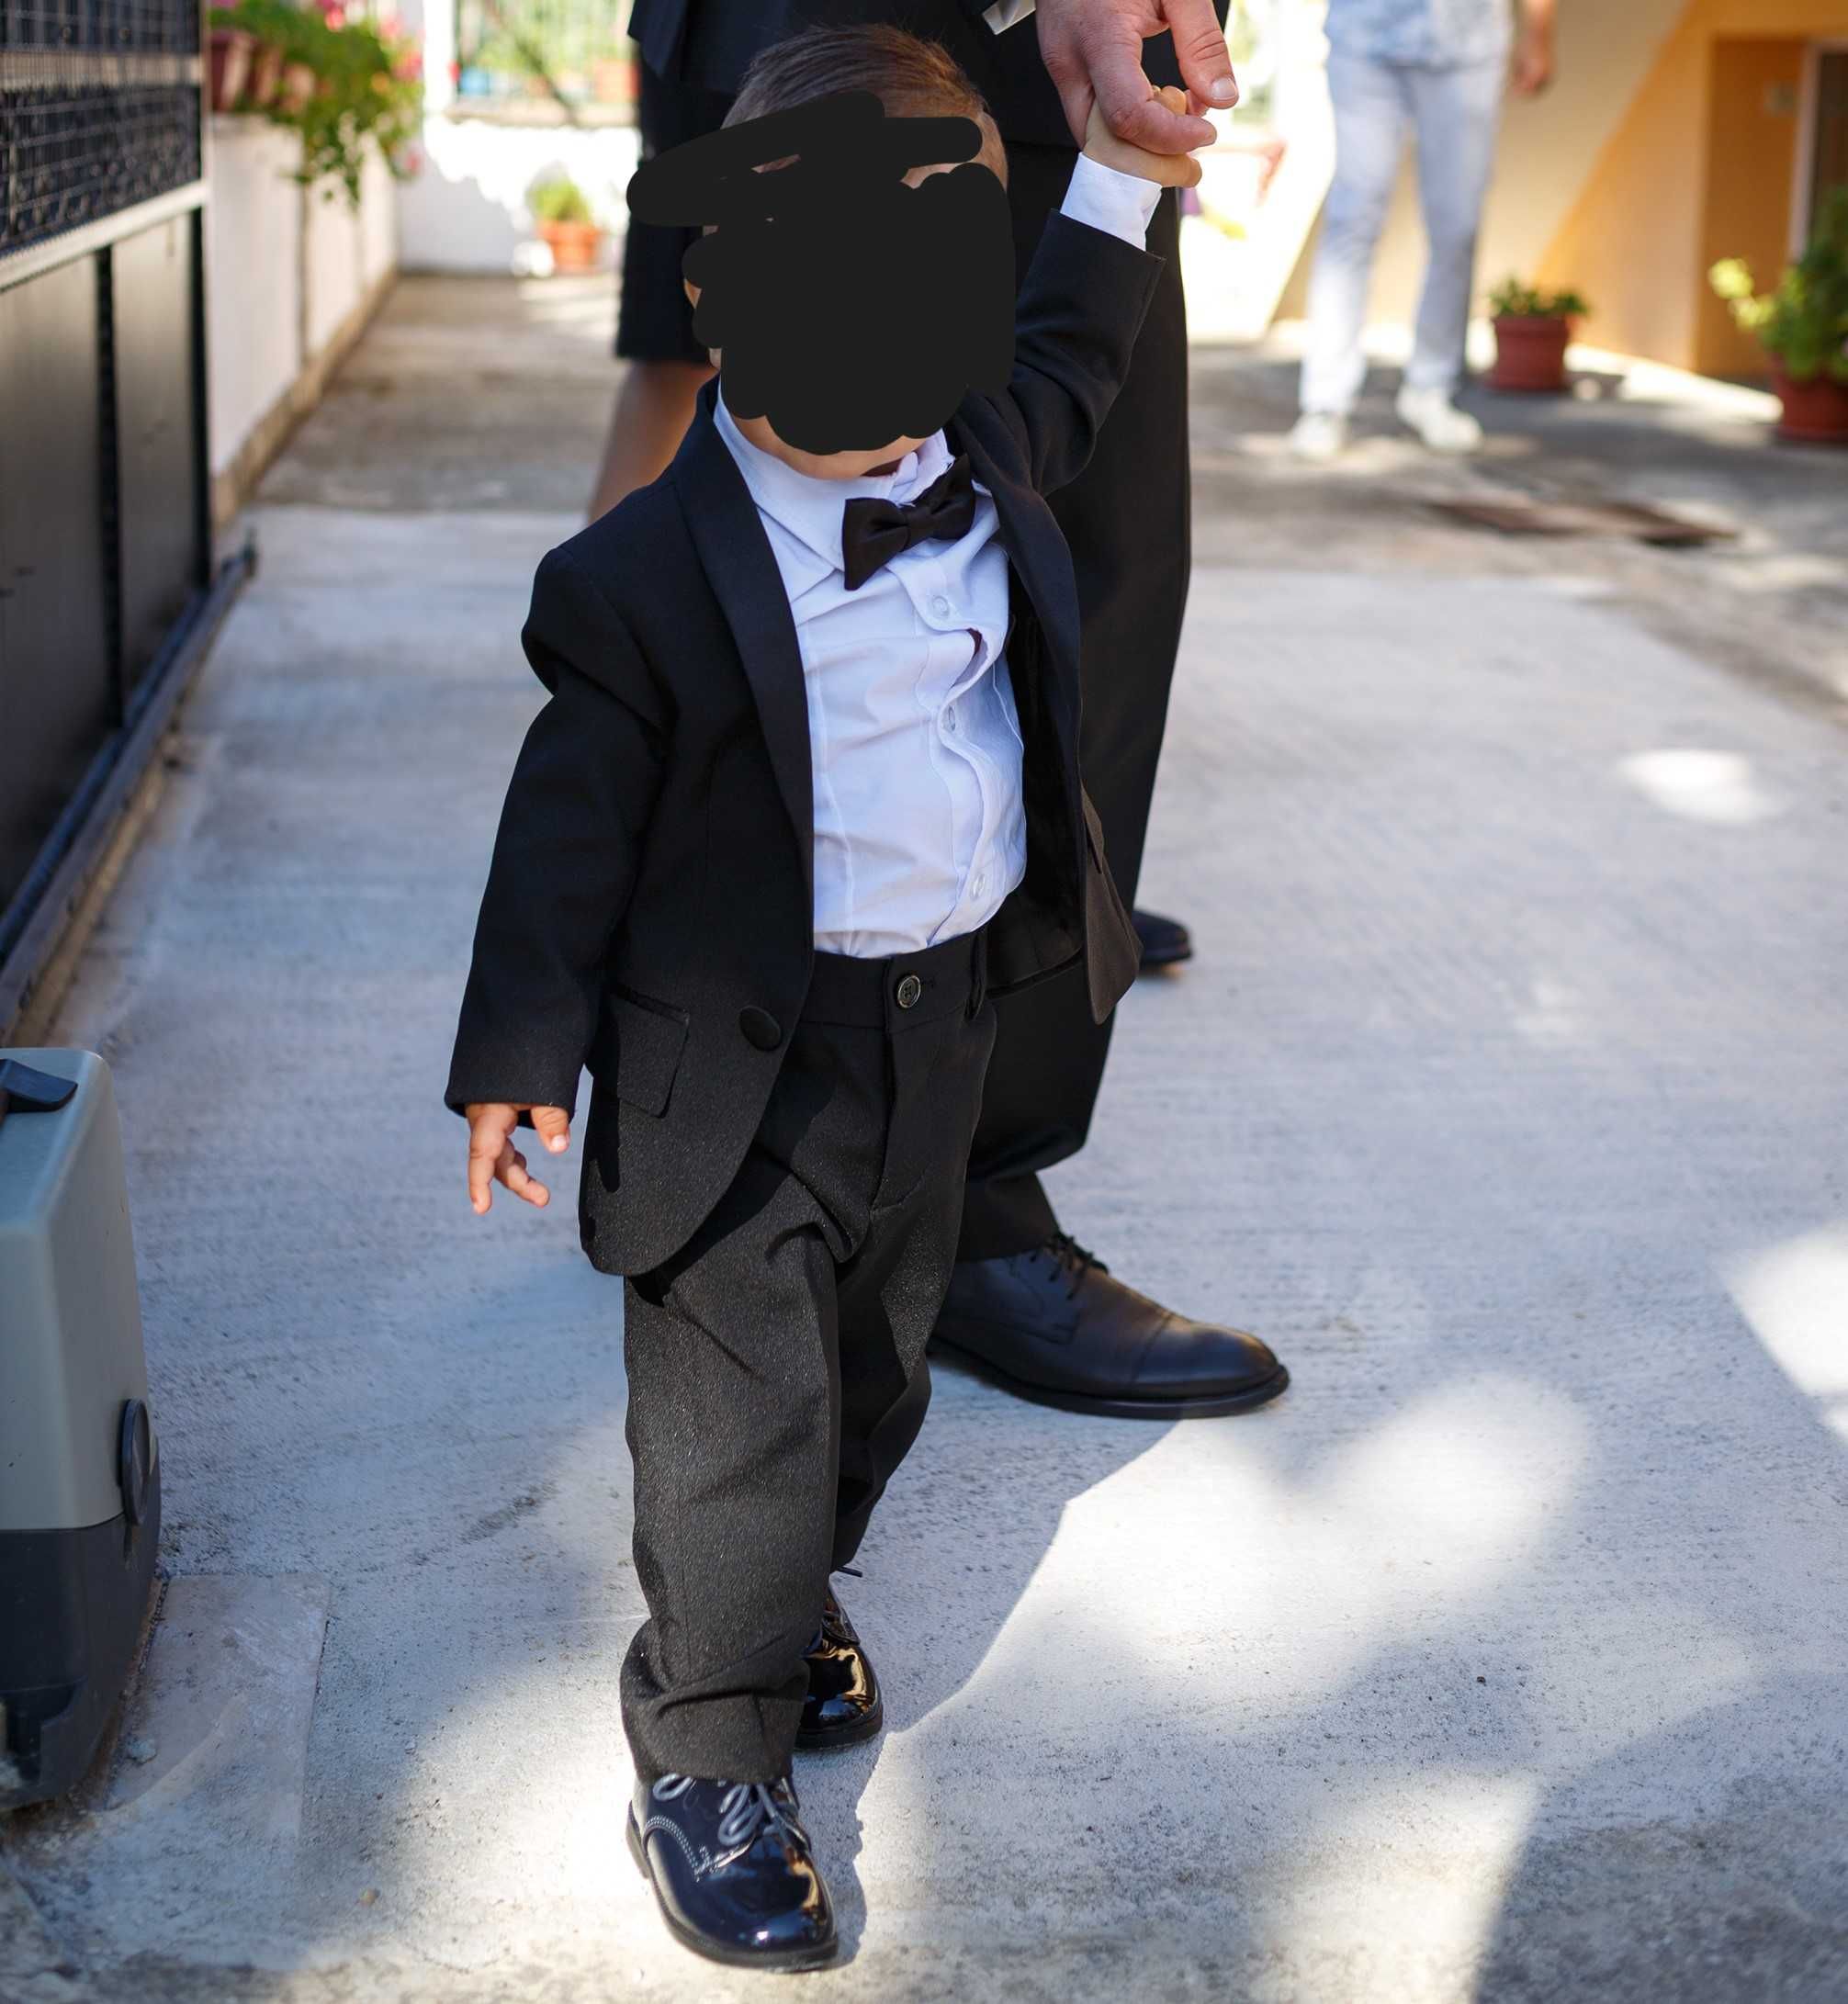 детски сватбен костюм за дете на година и полувина